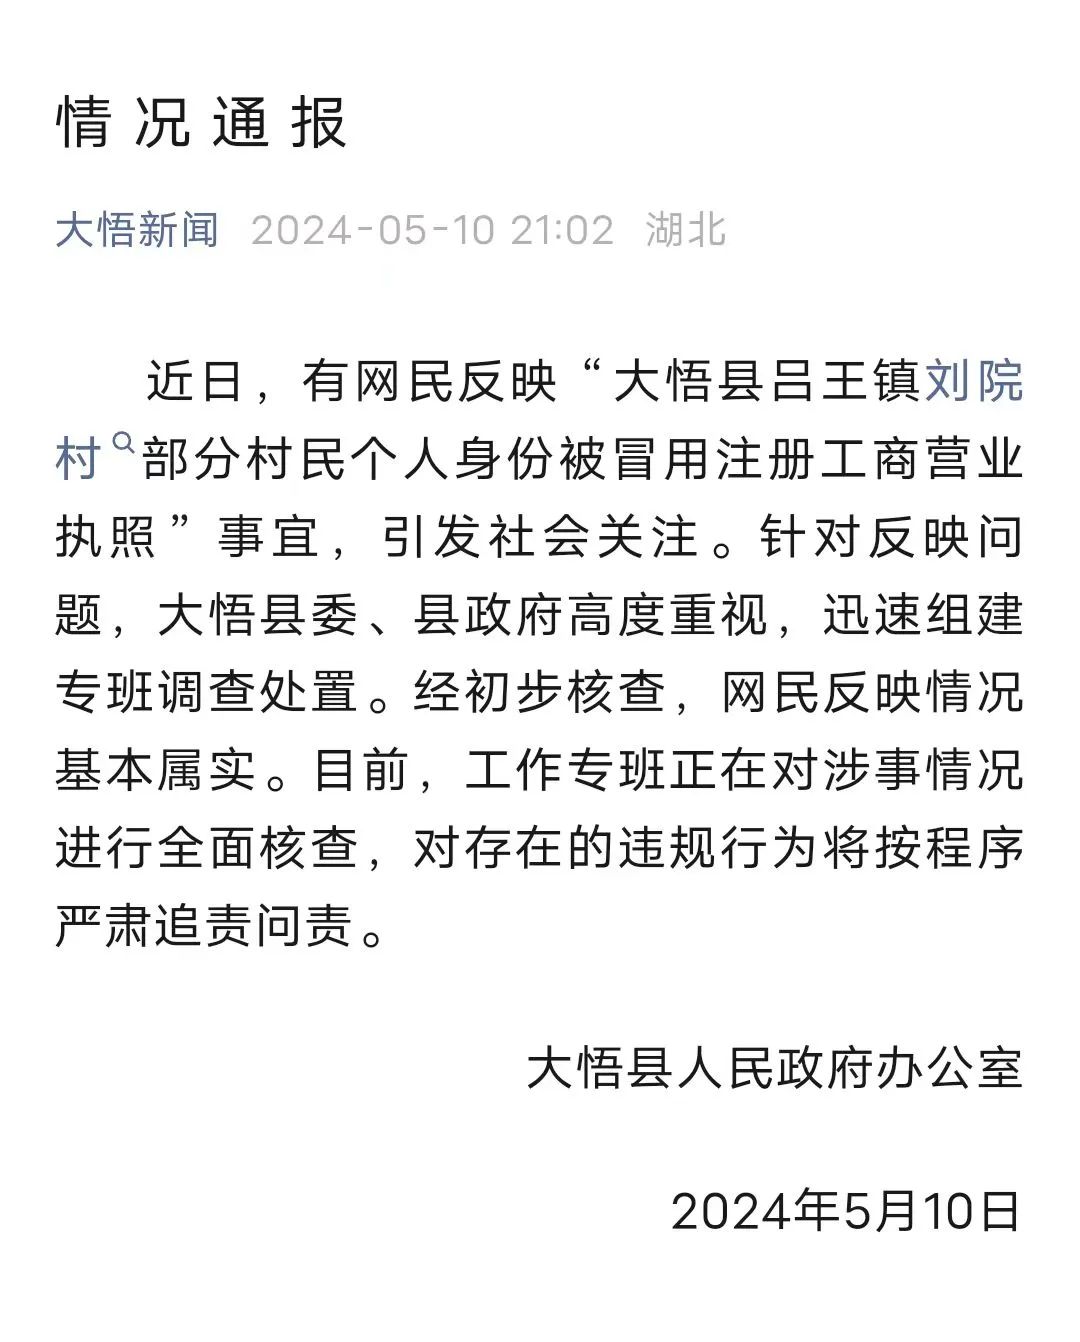 ▲5月10日晚，大悟县人民政府的情况通报。